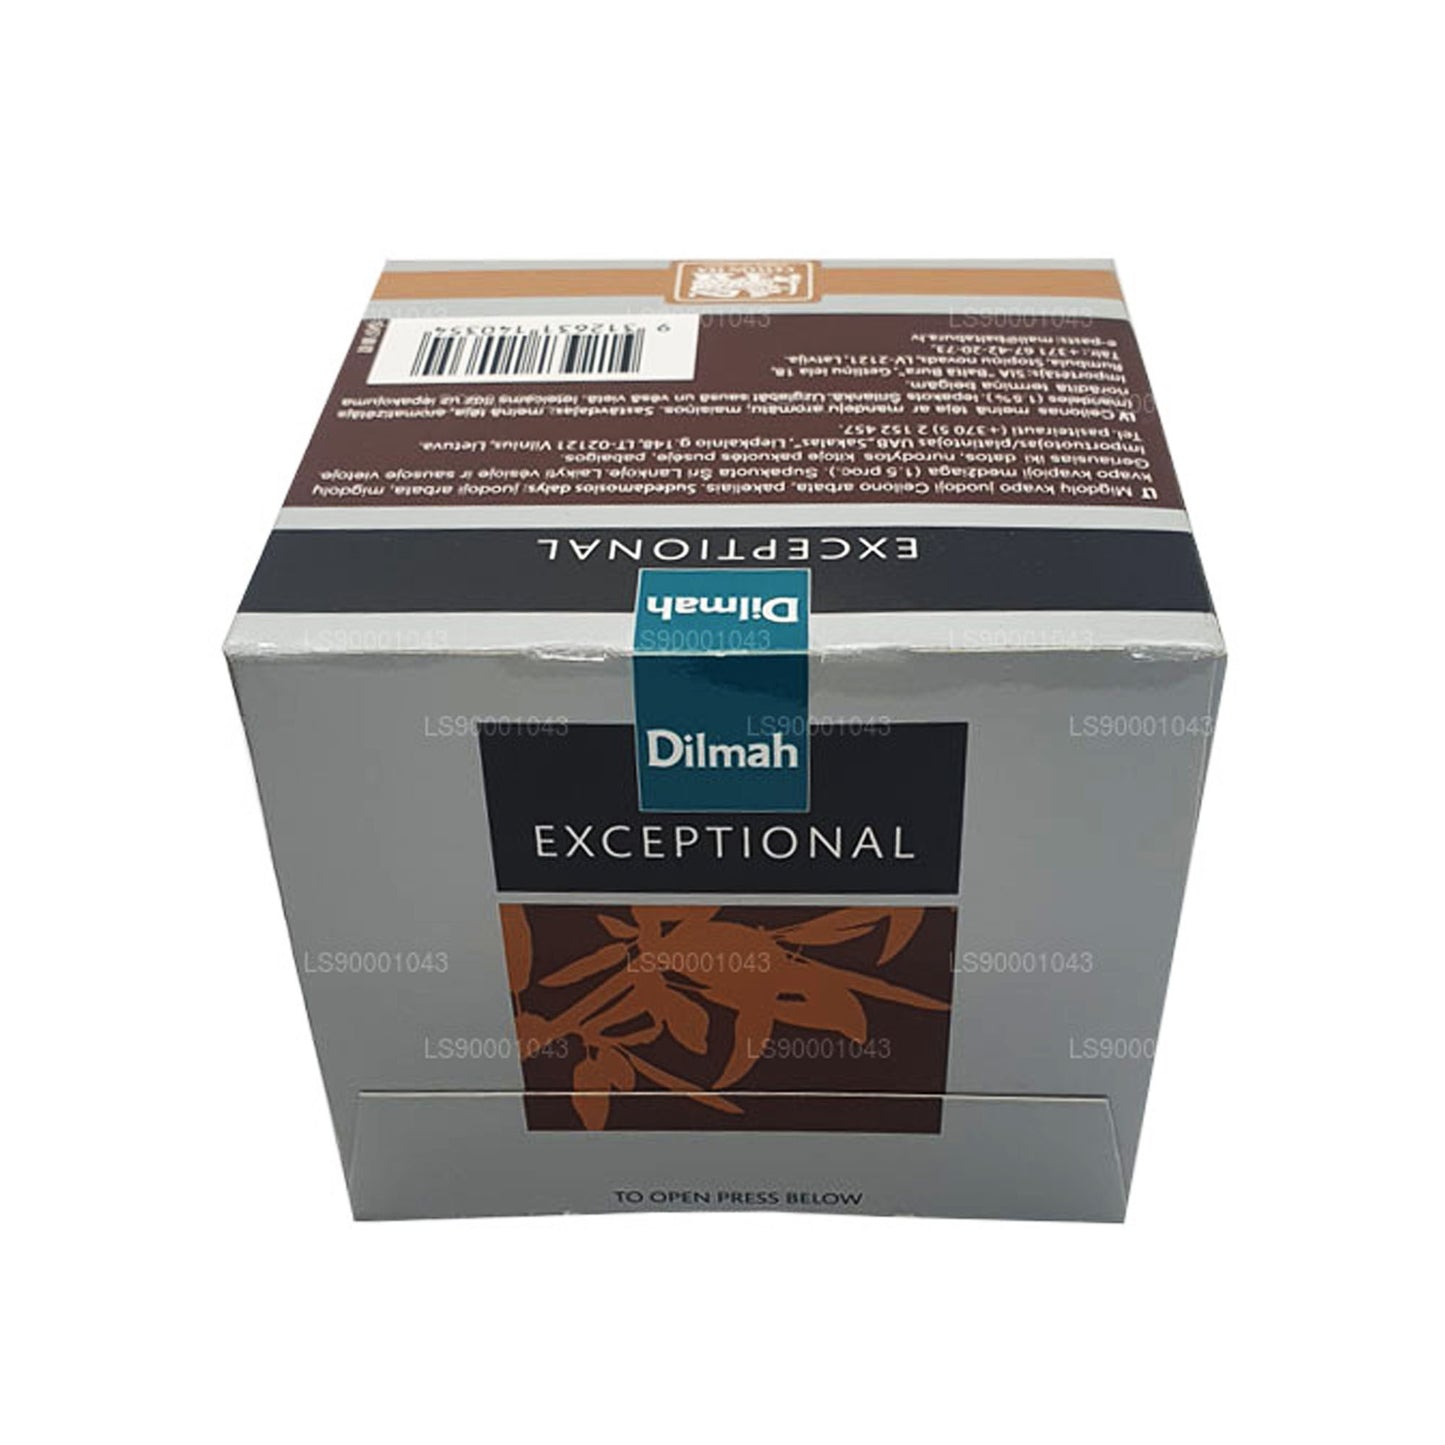 Dilmah Exceptional Italian Almond Real Leaf Tea (40g) 20 čajových sáčků